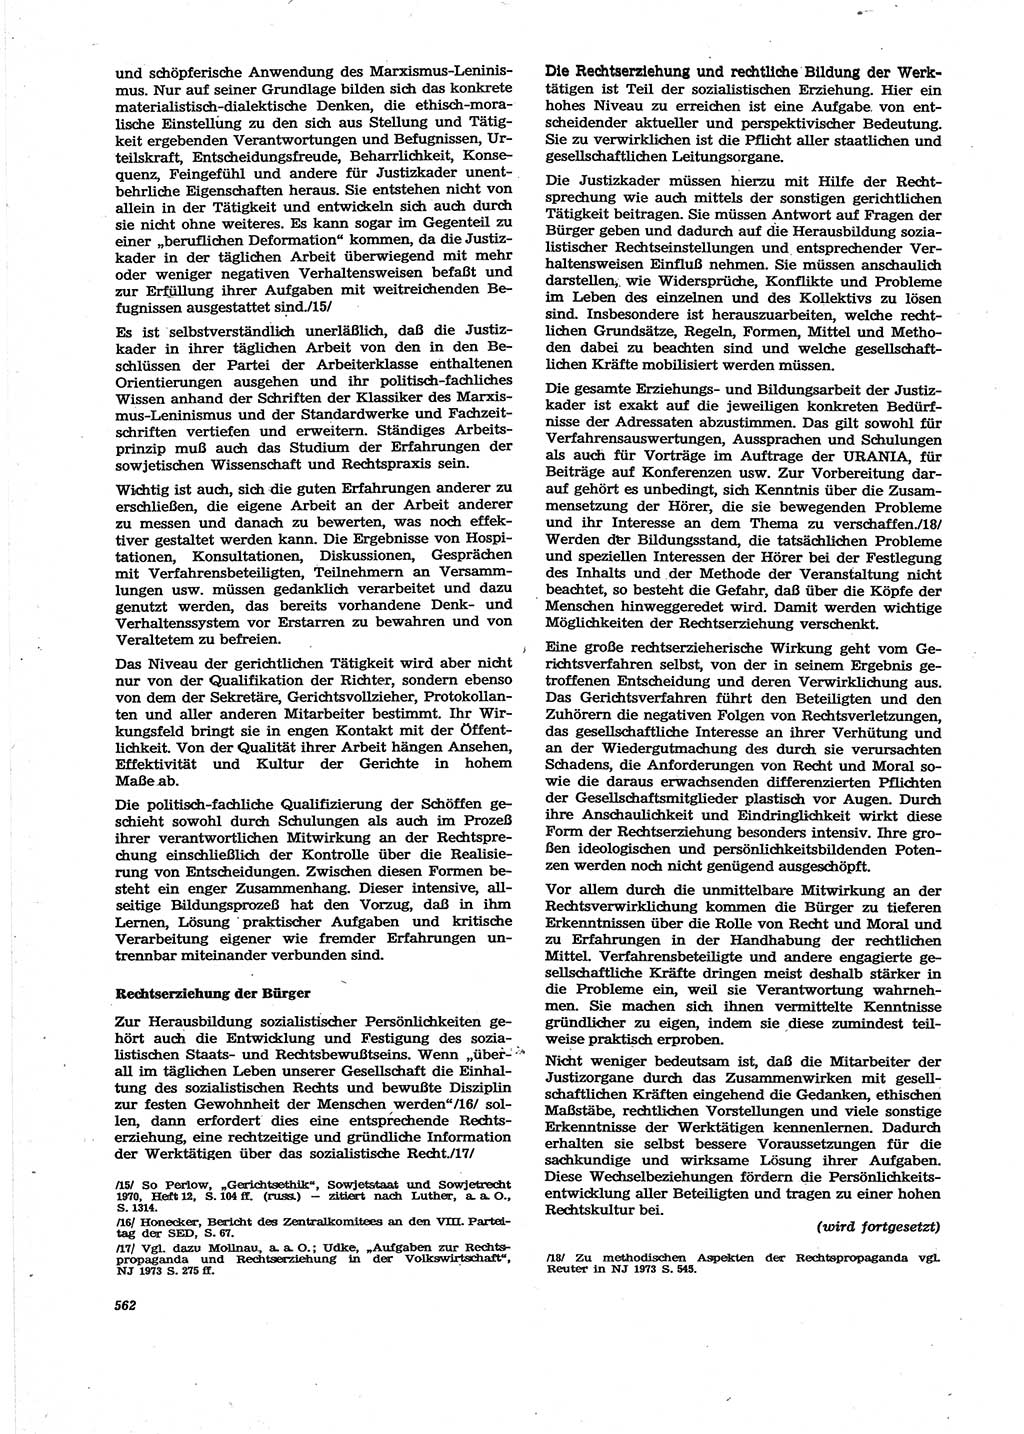 Neue Justiz (NJ), Zeitschrift für Recht und Rechtswissenschaft [Deutsche Demokratische Republik (DDR)], 27. Jahrgang 1973, Seite 562 (NJ DDR 1973, S. 562)